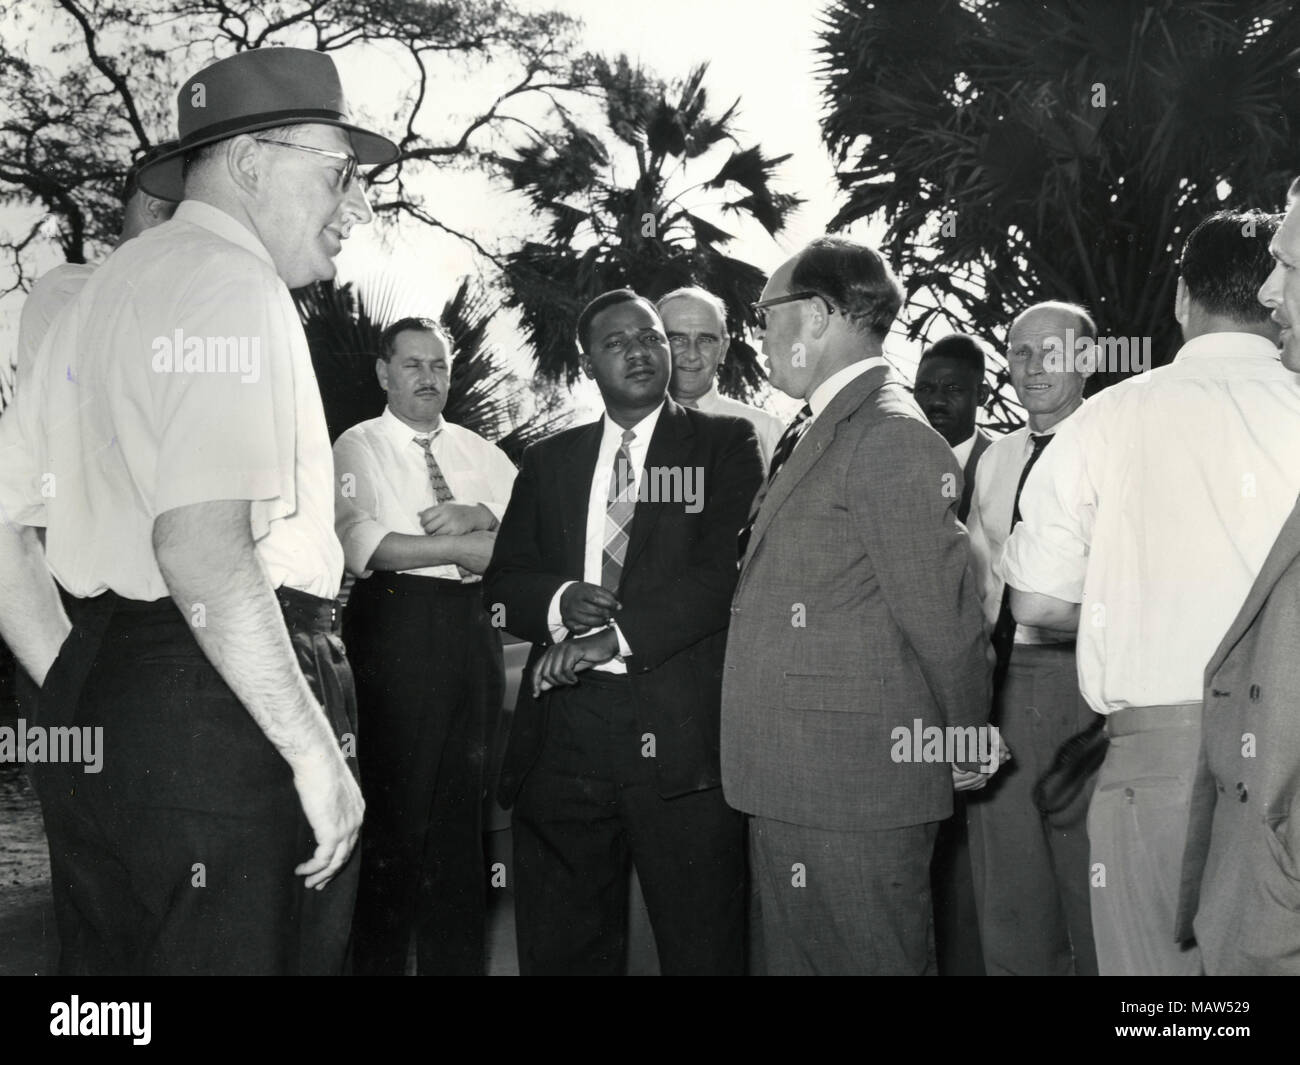 M.G. Rabb, J.J. Steyn, E. Mwamba, Sir John Smith Moffat, E.M. Sicely, A.E. Carlisle, et le Dr A.G. Smith de la confiance, de la Kafue Sélection rhodésienne Polder pilote Rhodésie du Sud, Zambie, 1959 Banque D'Images